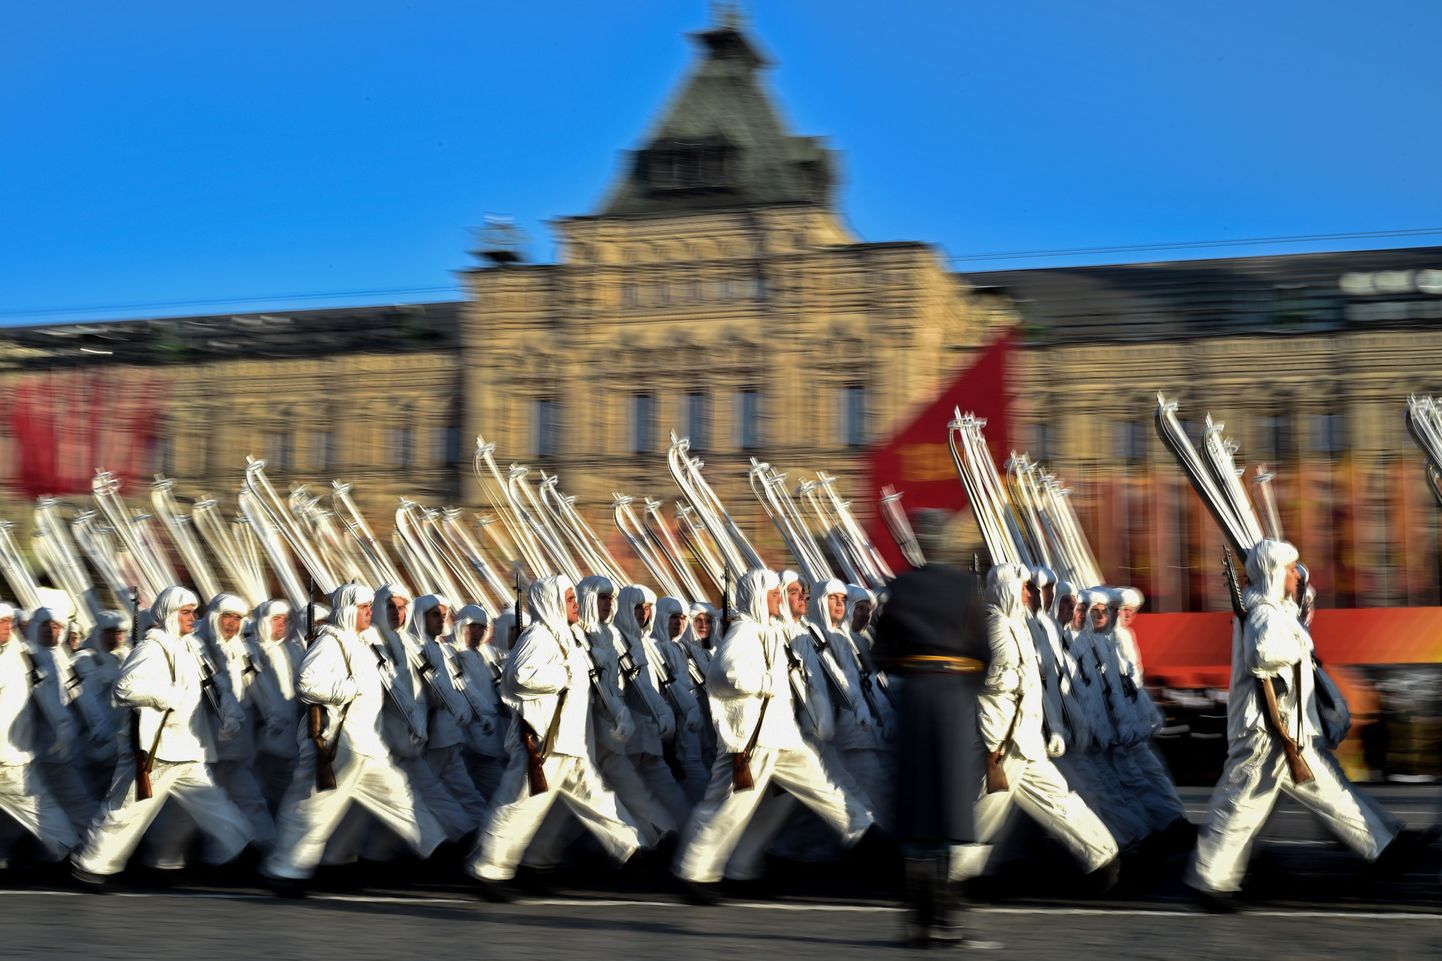 Vene sõdurid Punaarmee talvevormis 7. jaanuaril 2015 Punasel väljakul peetud paraadil